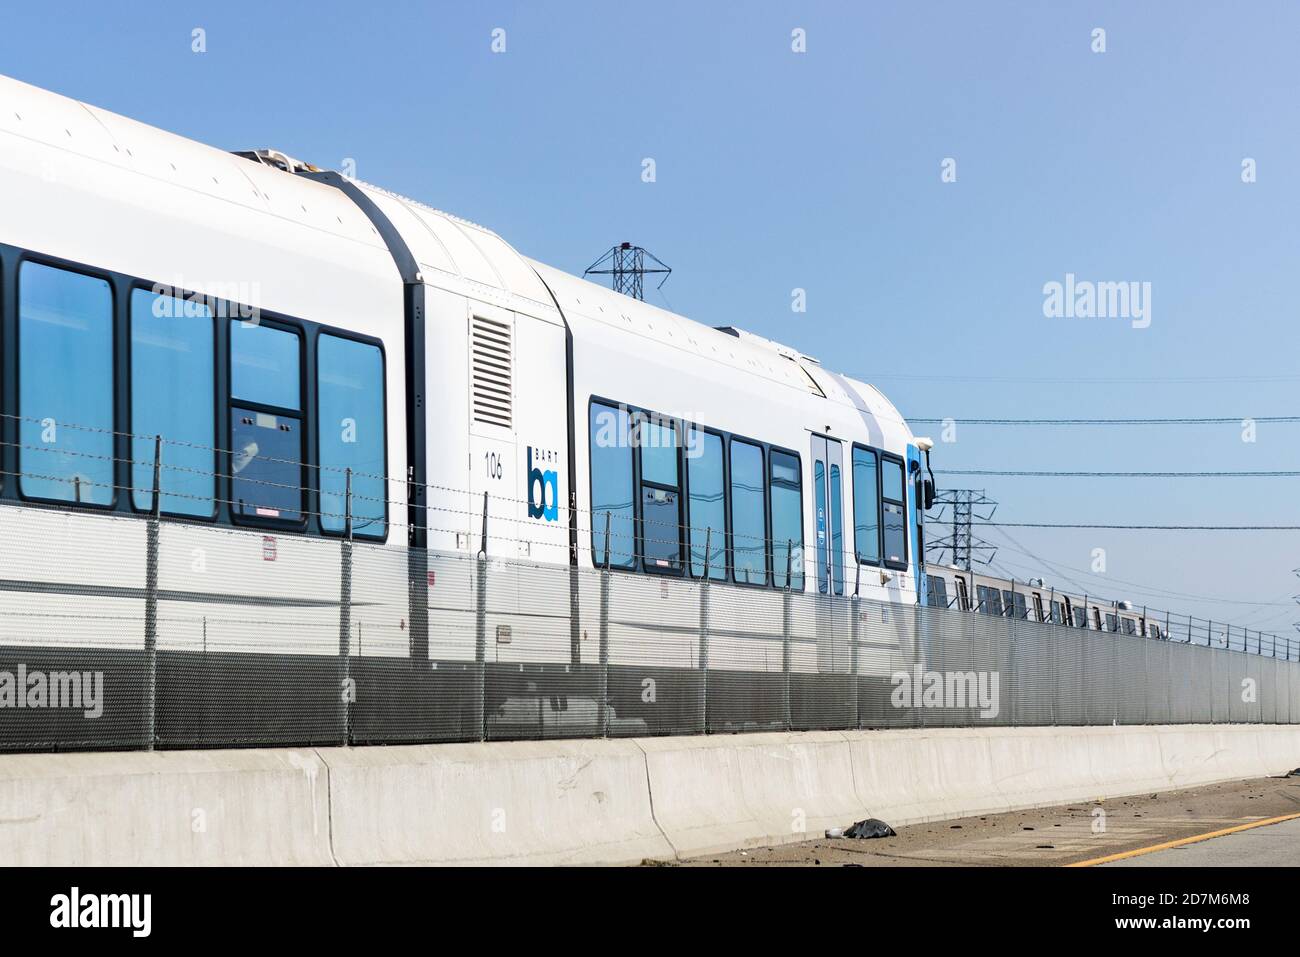 4 ottobre 2020 Pittsburg / CA / USA - BART treno diesel che viaggia nell'area della baia di San Francisco est; BART to Antioch è una linea DMU (Diesel Multiple Unit) Foto Stock